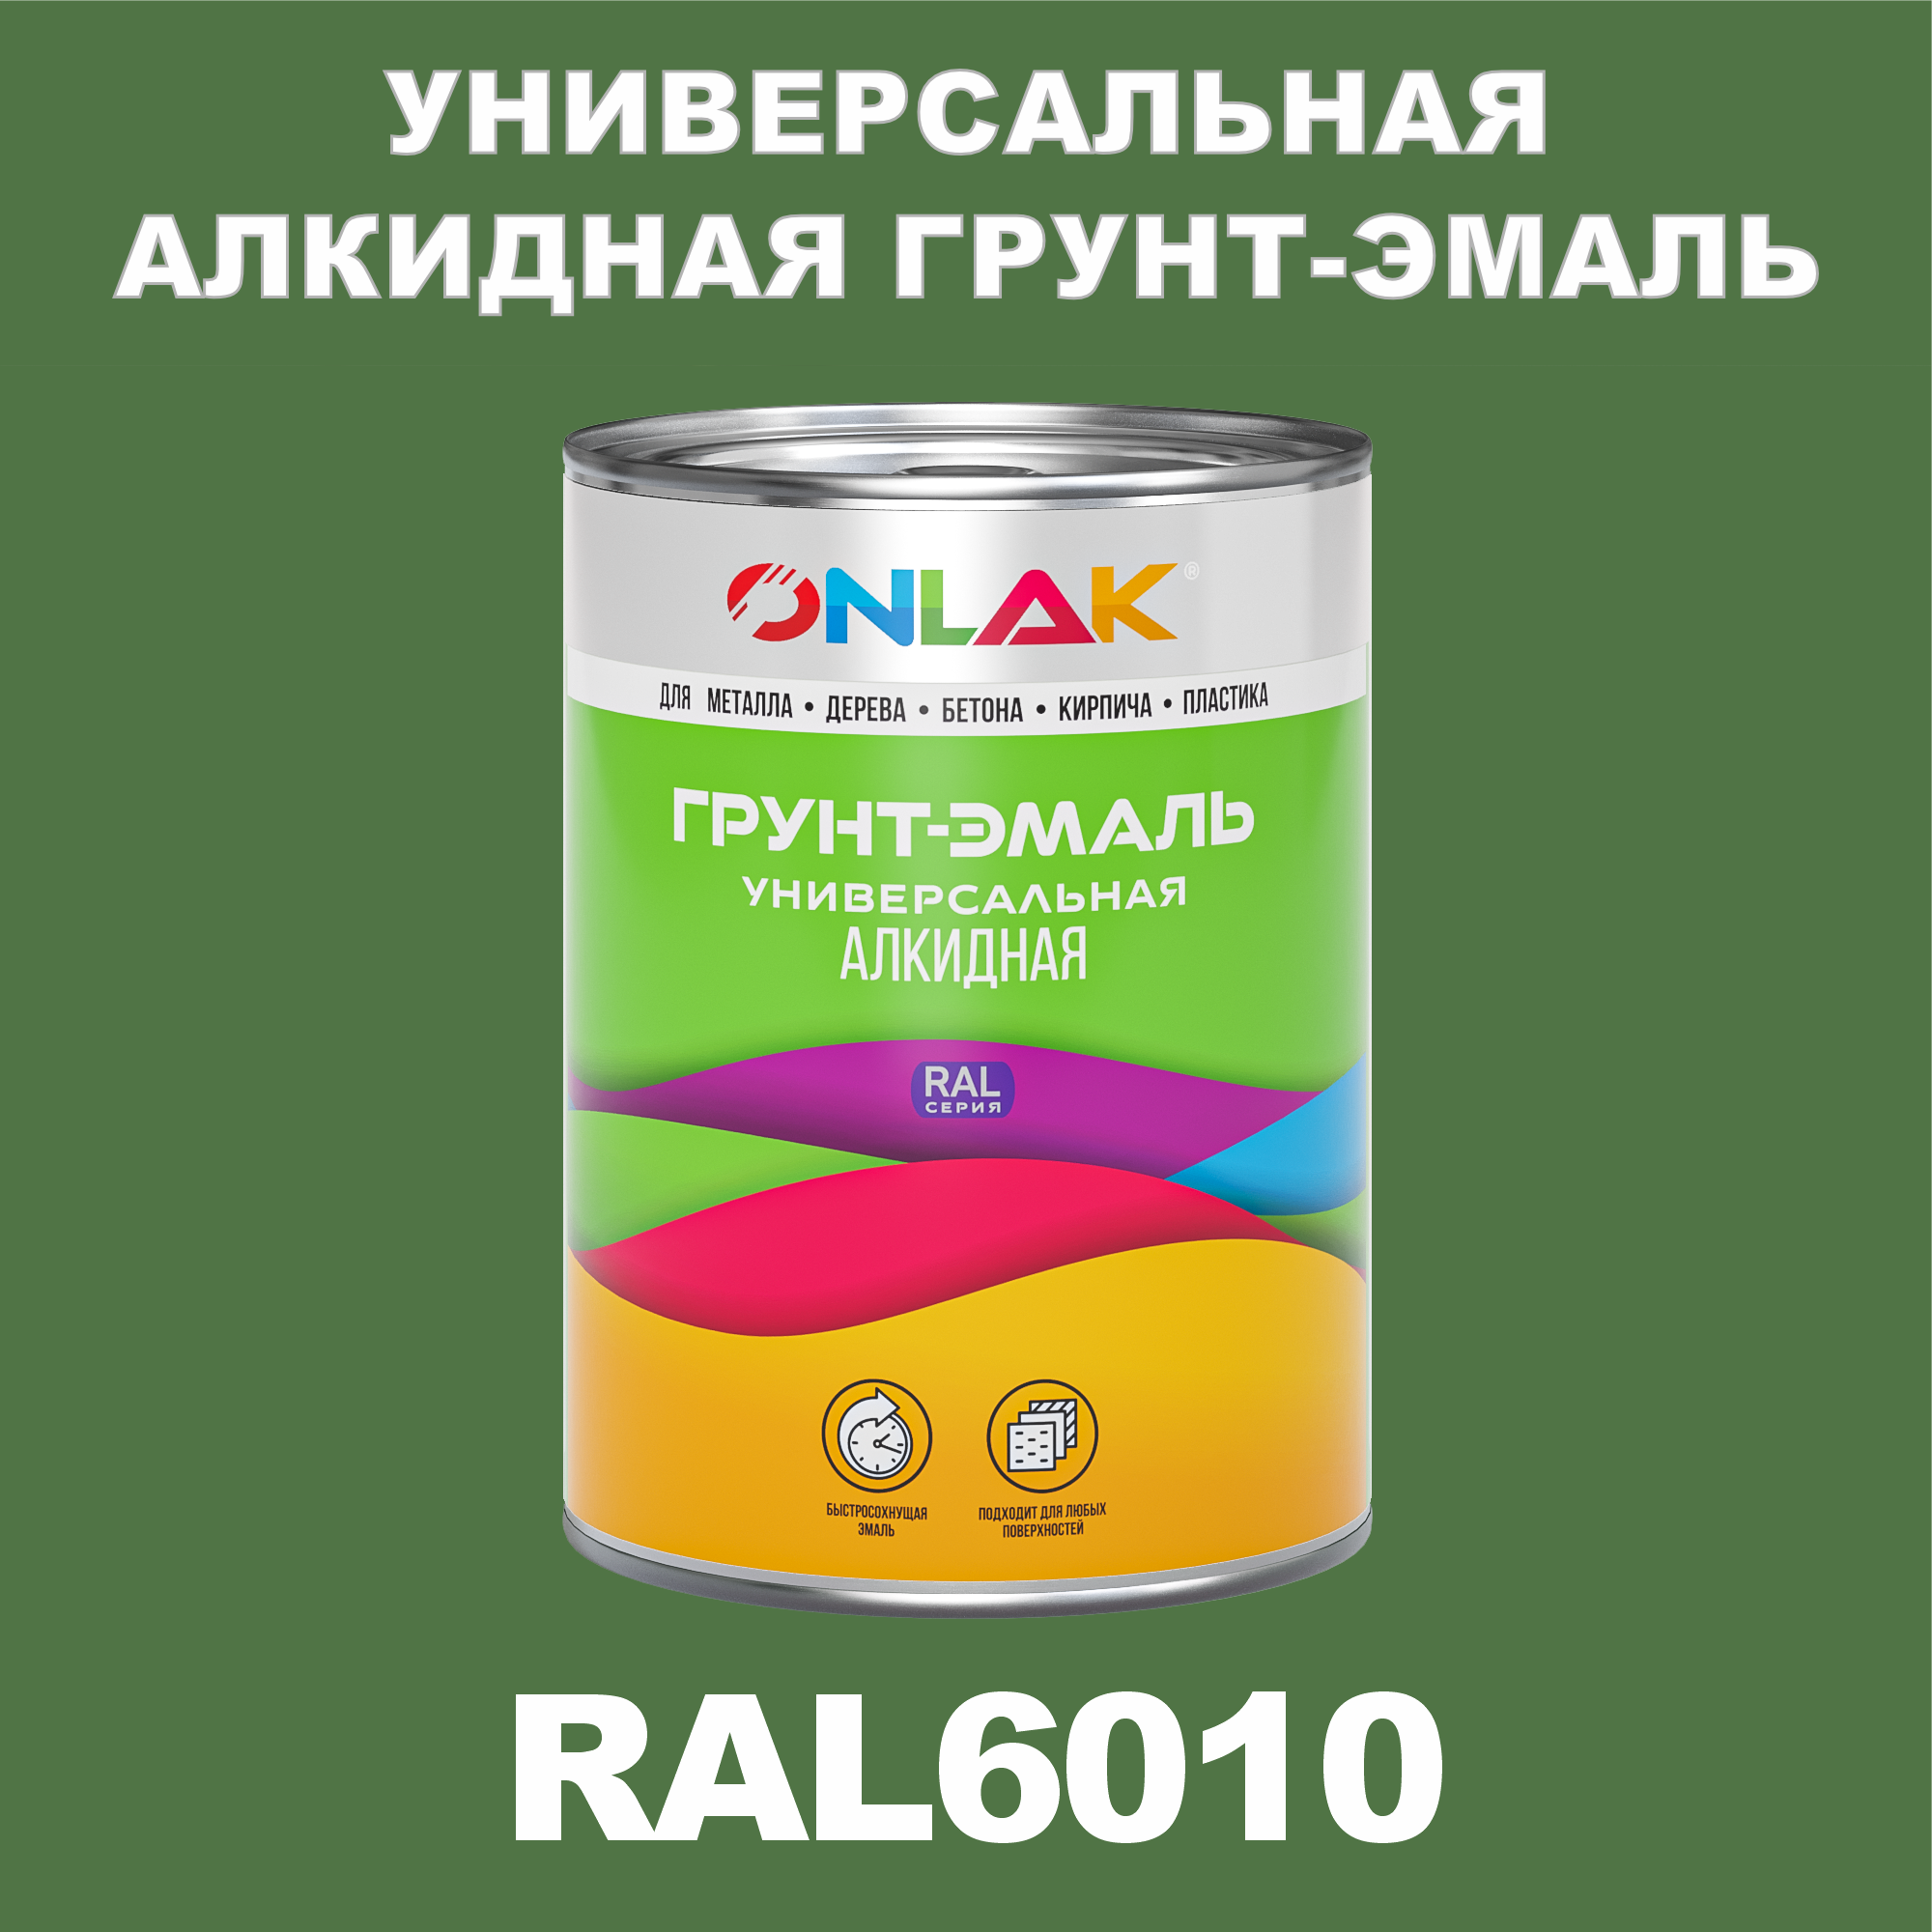 Грунт-эмаль ONLAK 1К RAL6010 антикоррозионная алкидная по металлу по ржавчине 1 кг грунт эмаль yollo по ржавчине алкидная зеленая 0 9 кг